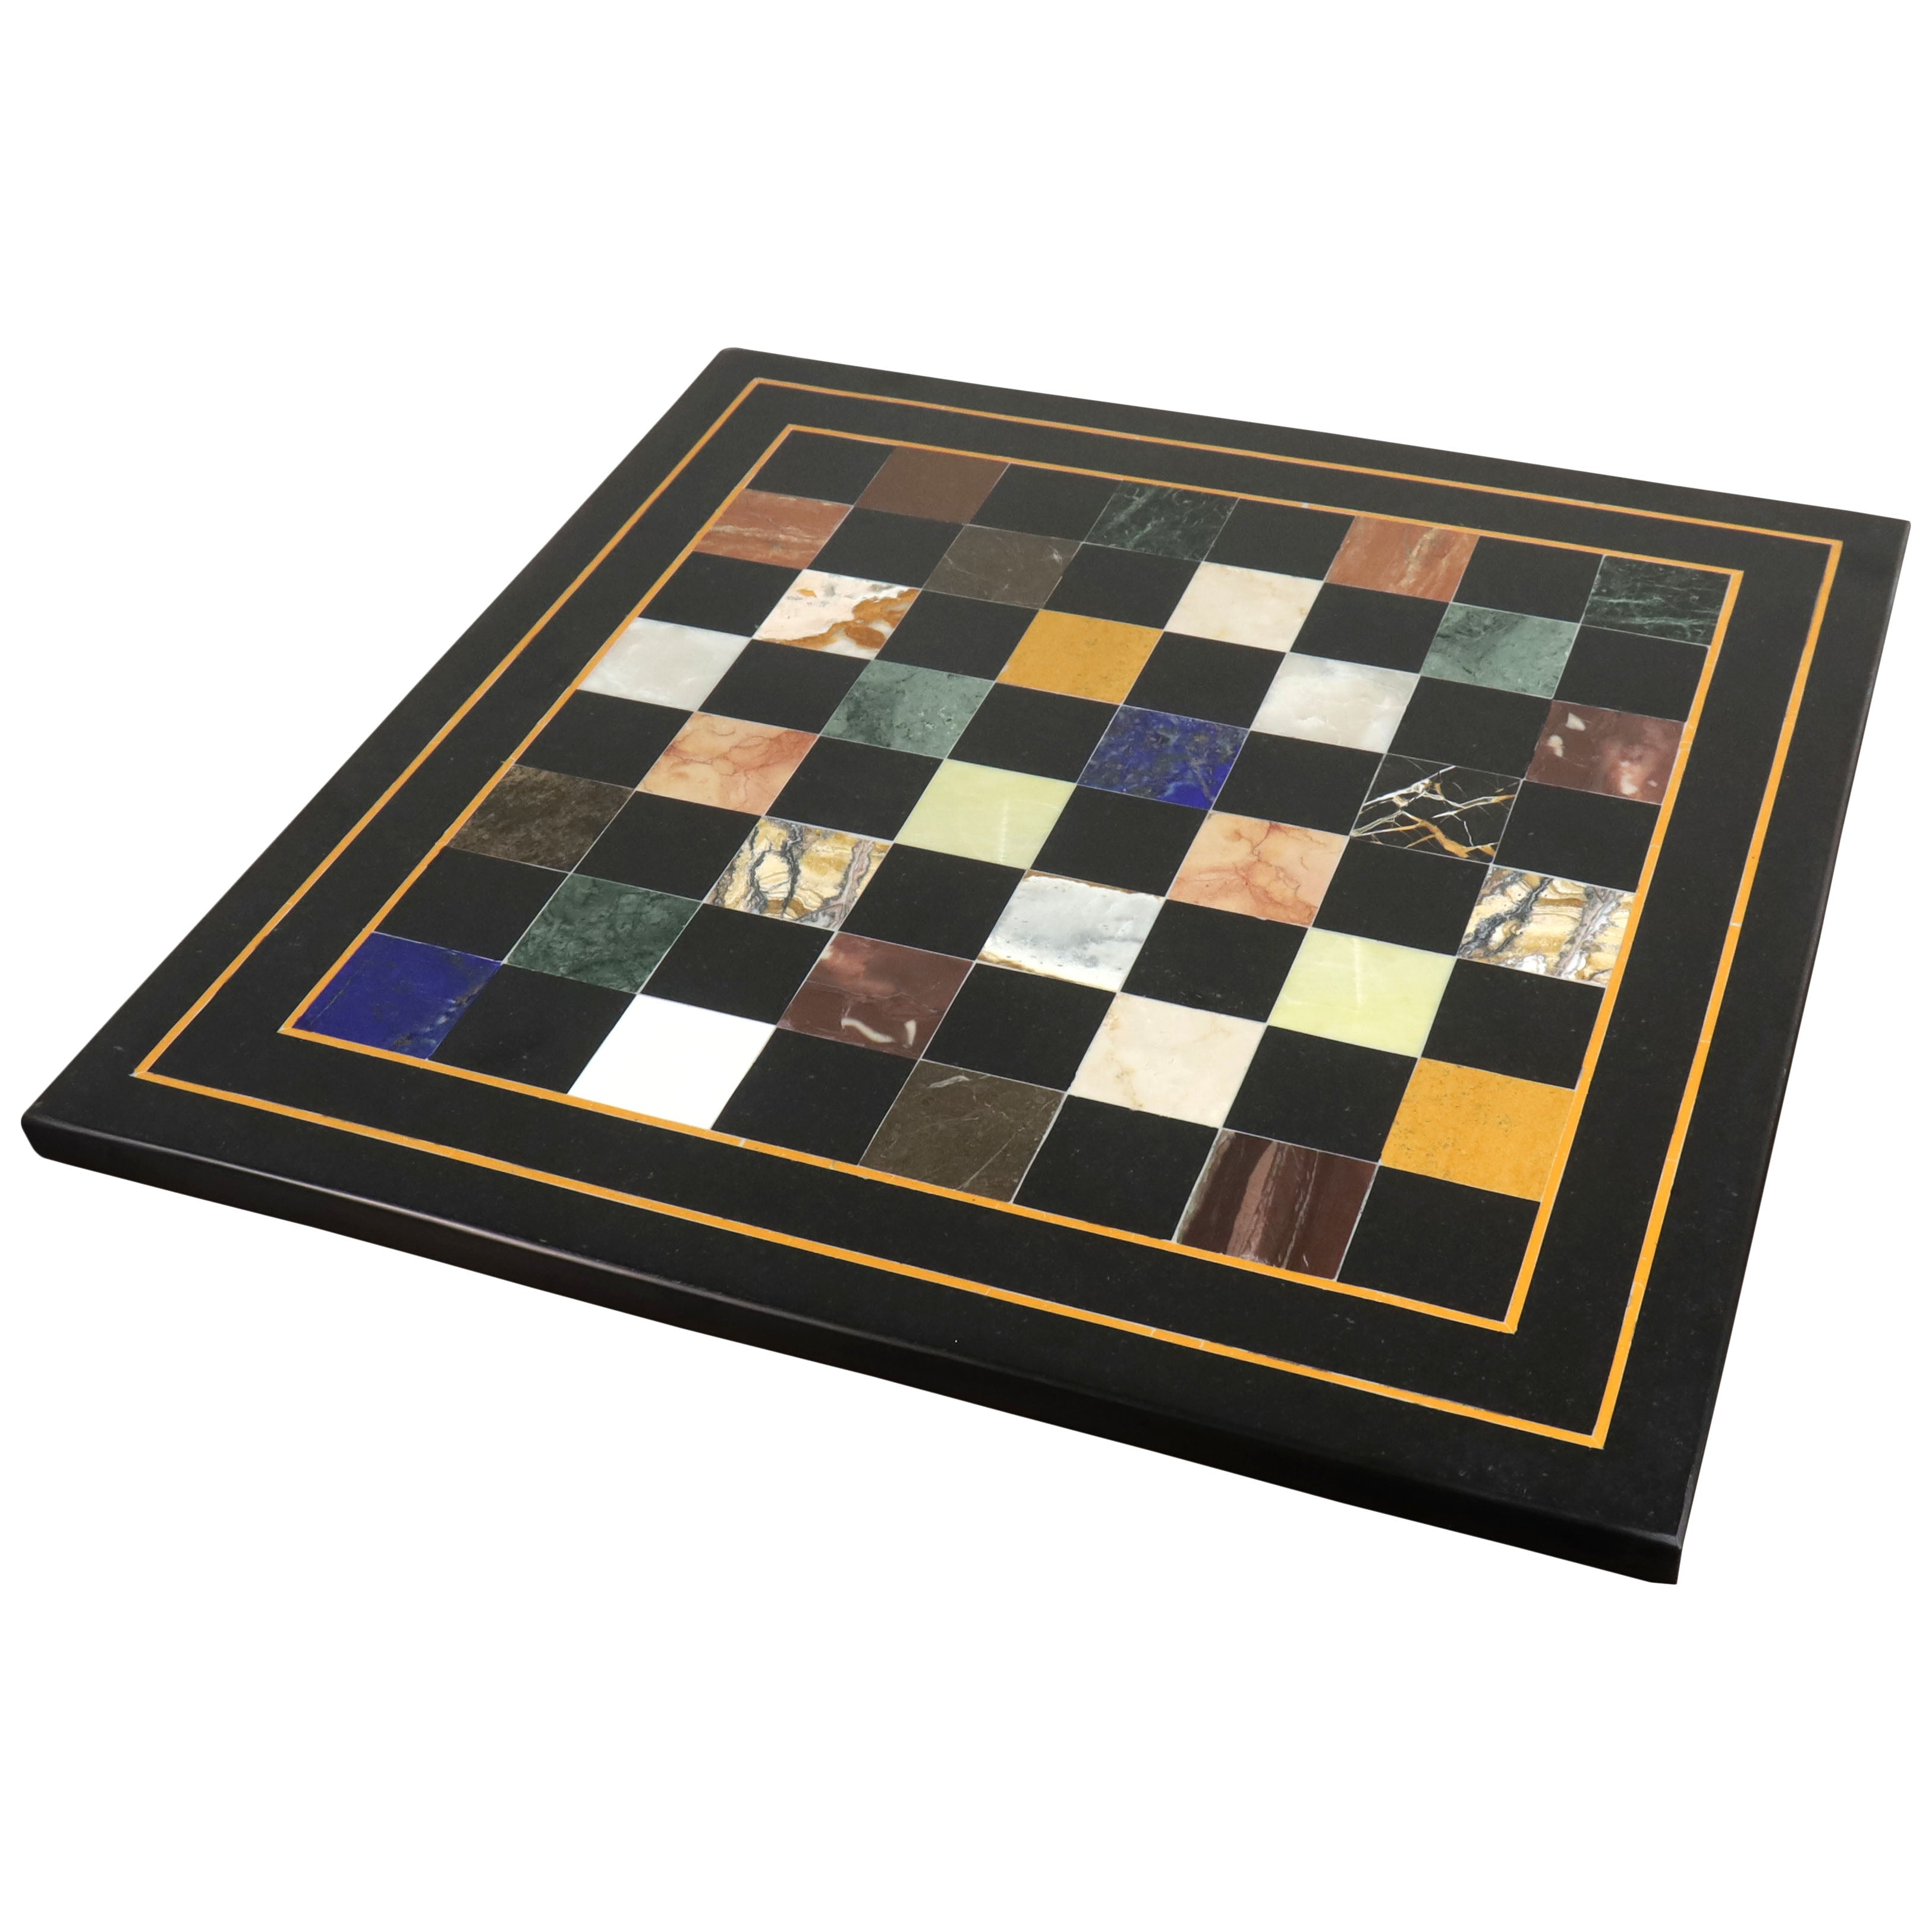 18'' Marble Stone Luxury Chess Board - Black & Multi Colour Semi-Preci
– Royal Chess Mall India
